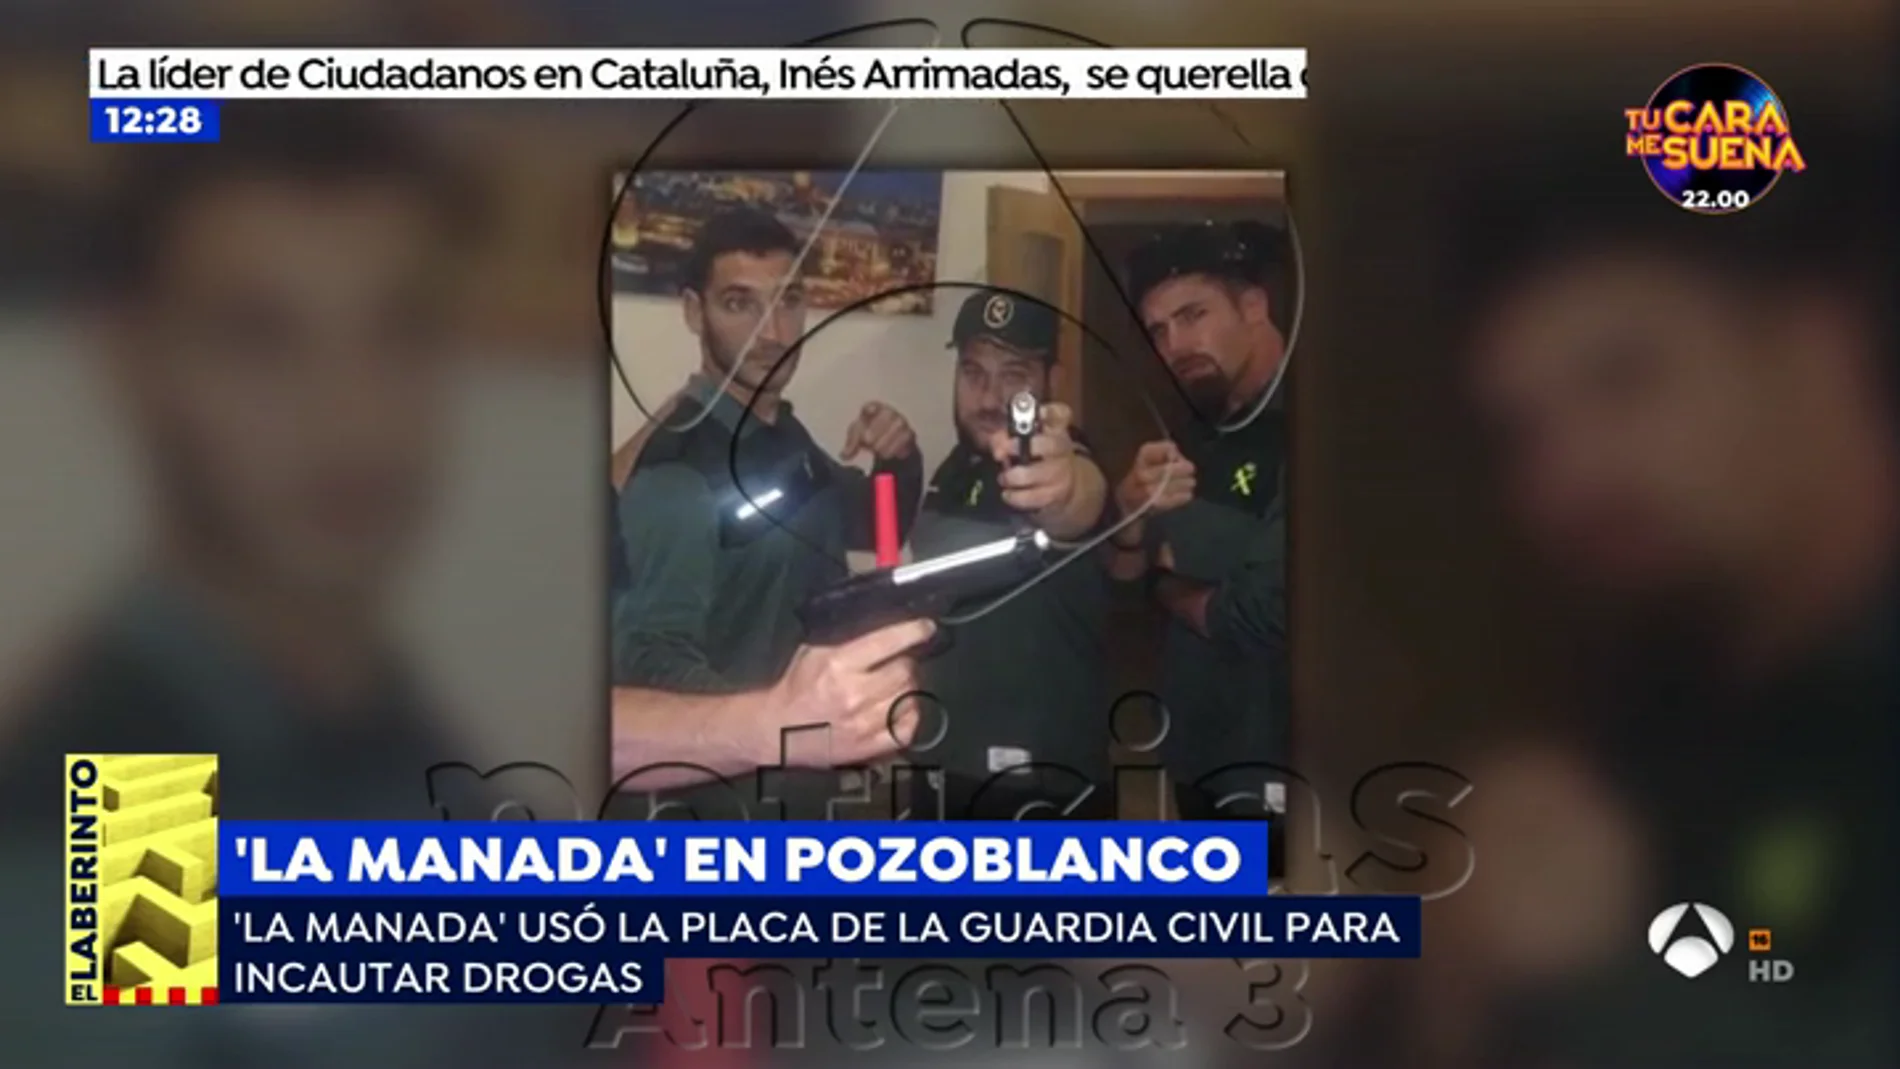 El guardia civil de La Manada usaba su placa para requisar drogas y alcohol que después consumía